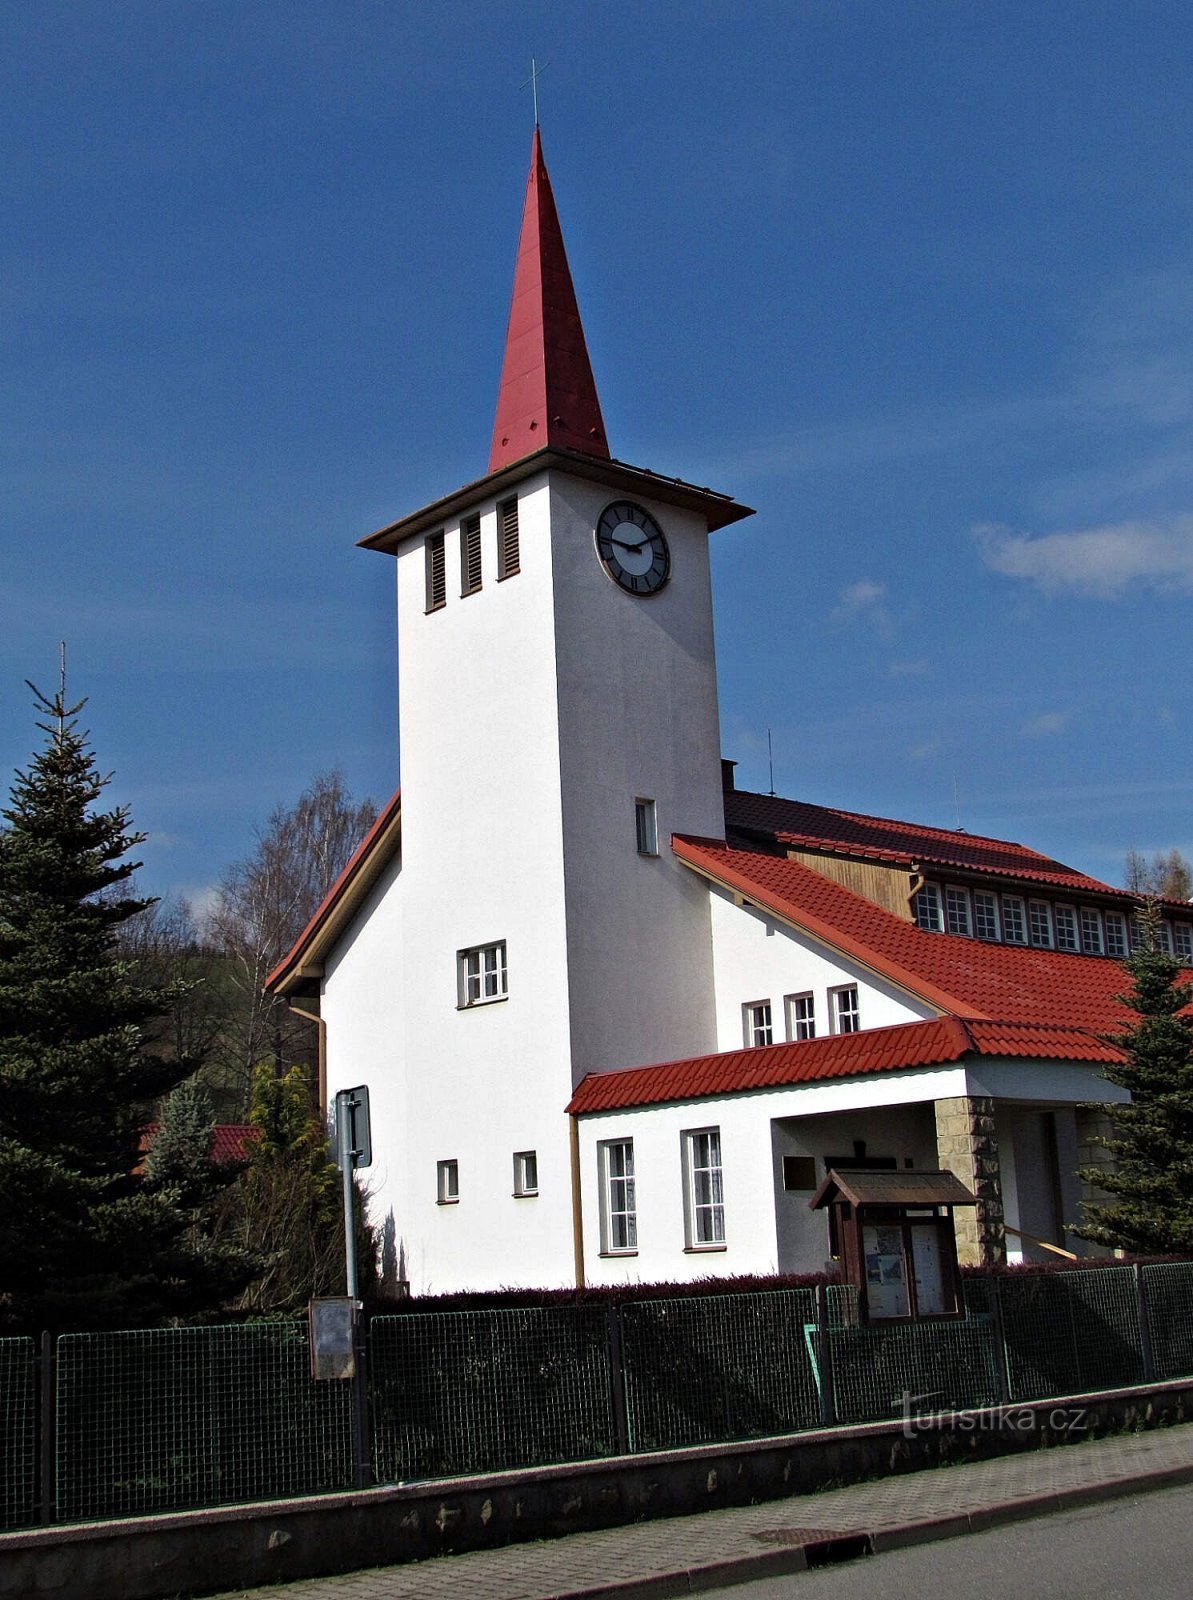 Катержинице - евангелическая церковь